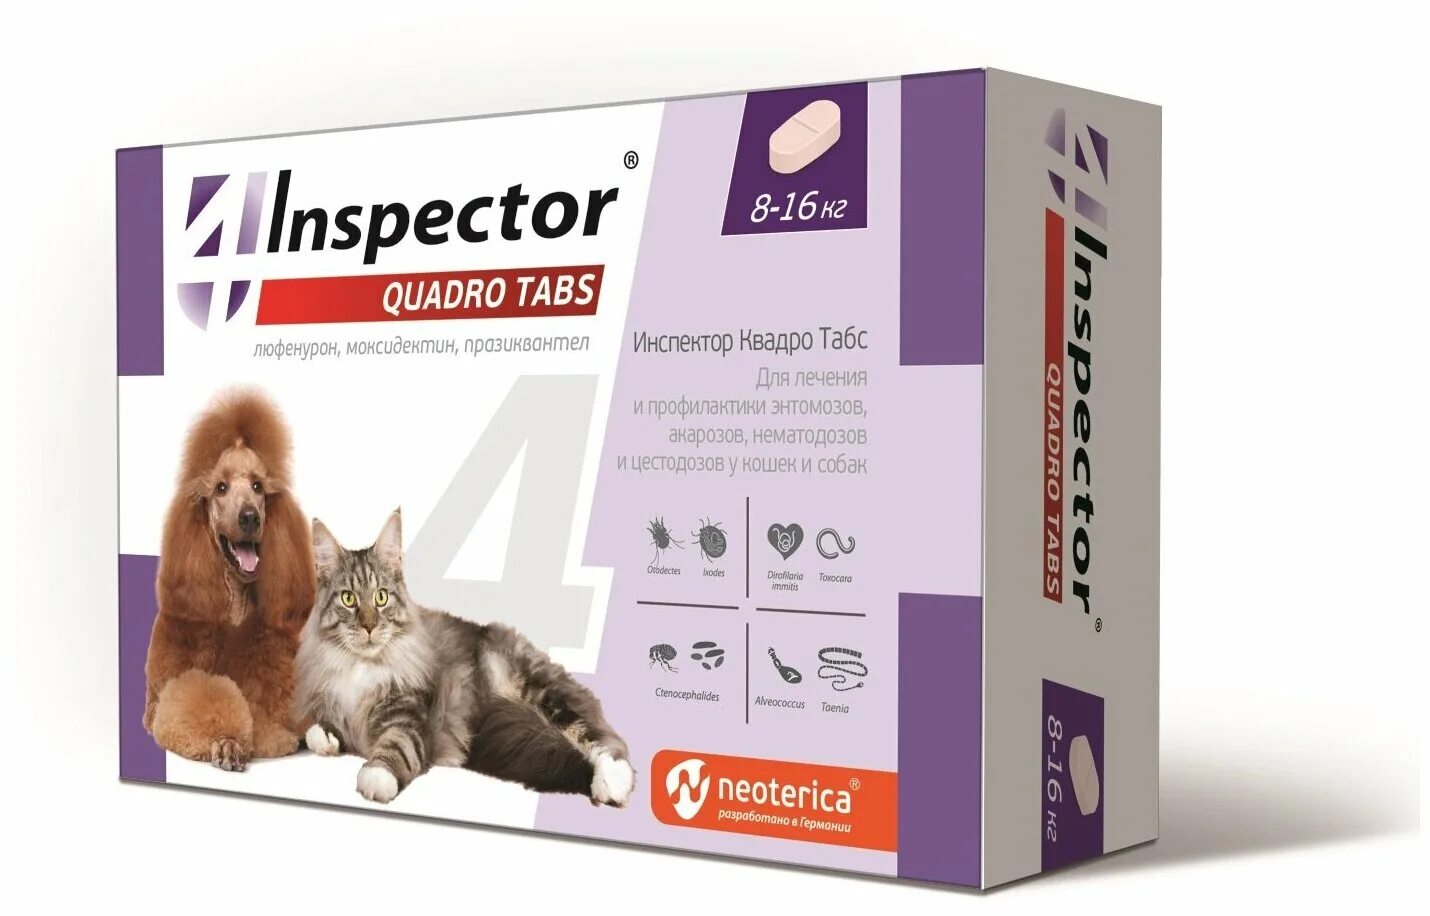 Где купить таблетки от клещей. Таблетки инспектор табс для кошек Квадро. Inspector таблетки от блох и клещей Quadro Tabs от 8 до 16 кг для кошек и собак. Inspector Quadro таблетки от блох, клещей и глистов от 2-8 кг. Для кошек и собак. Inspector таблетки Quadro 8-16.